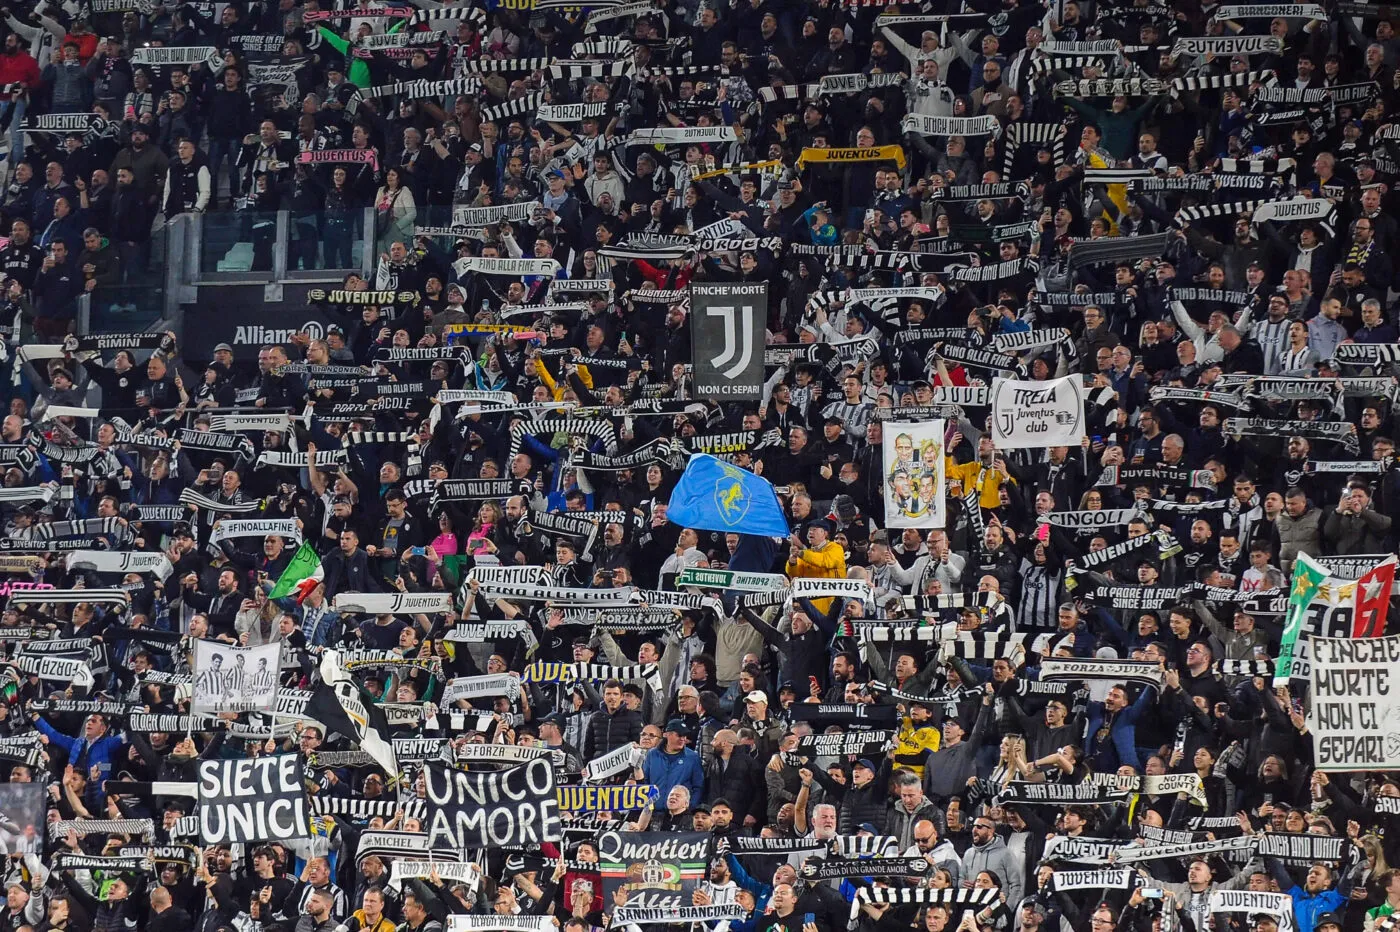 Interdiction de stade massive pour les supporters de la Juventus